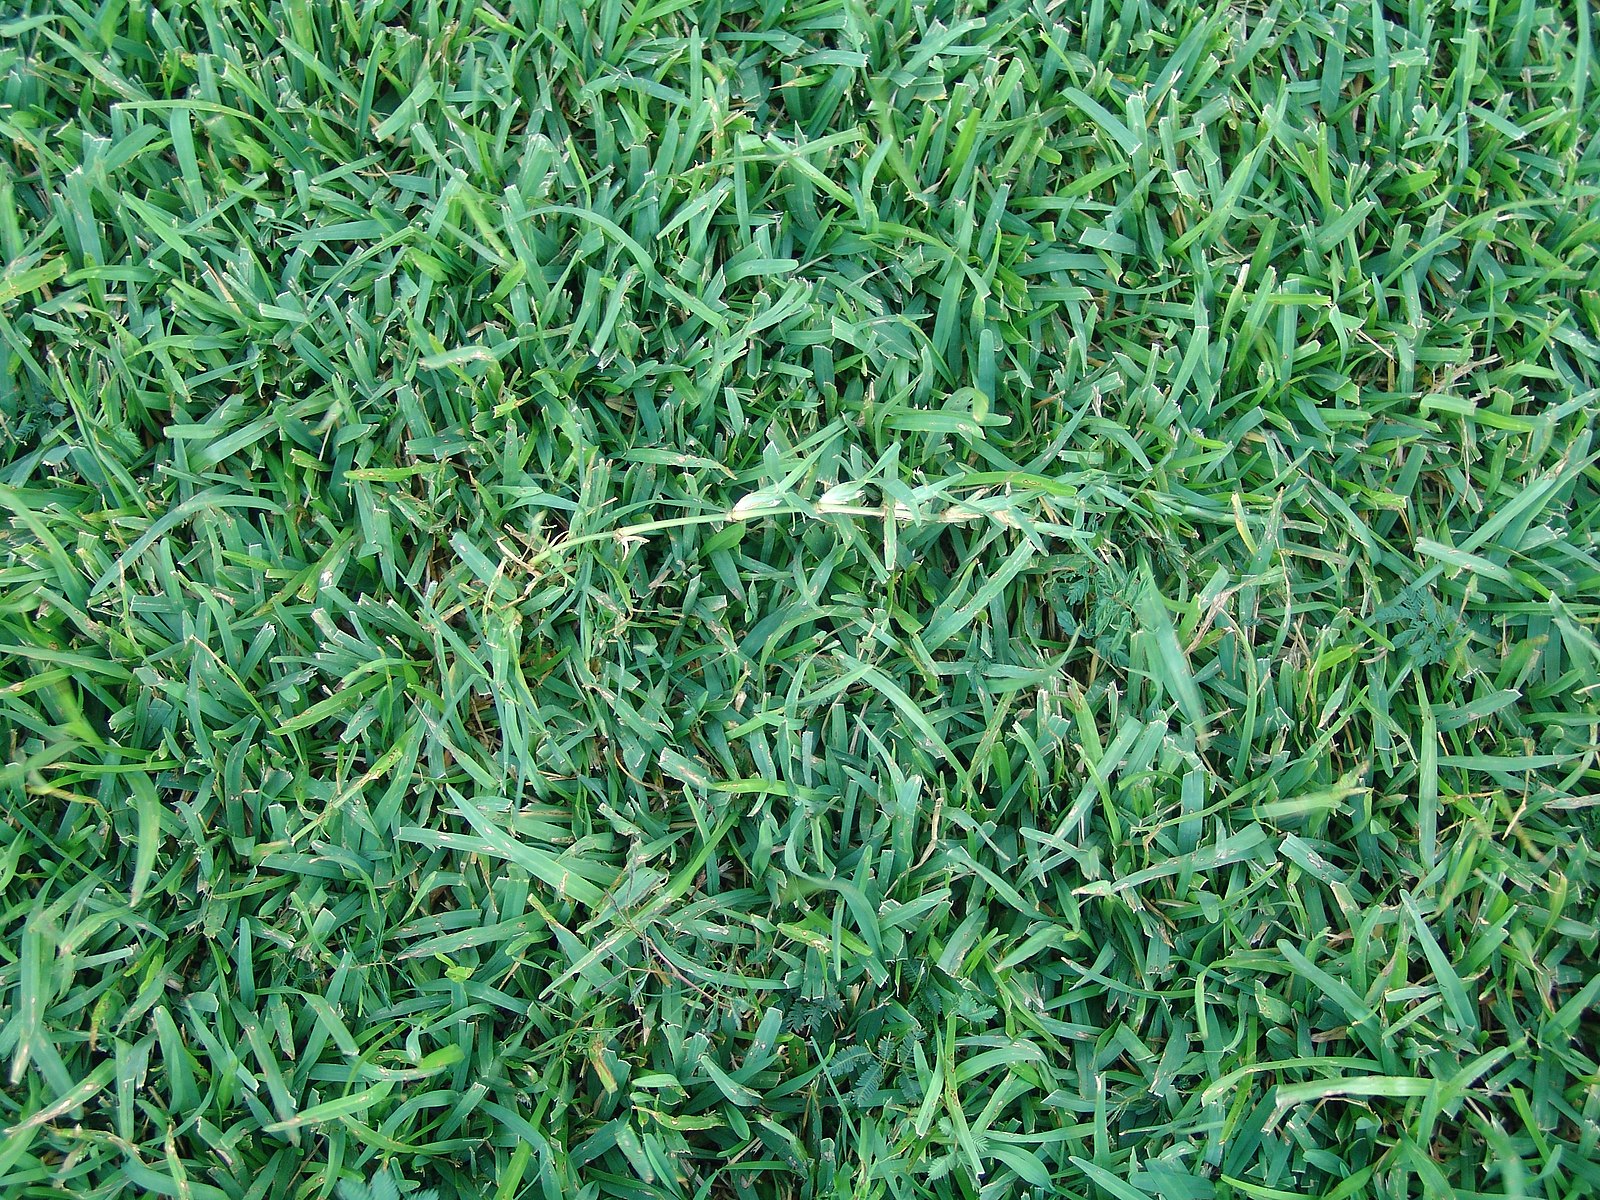 Centipede Grass